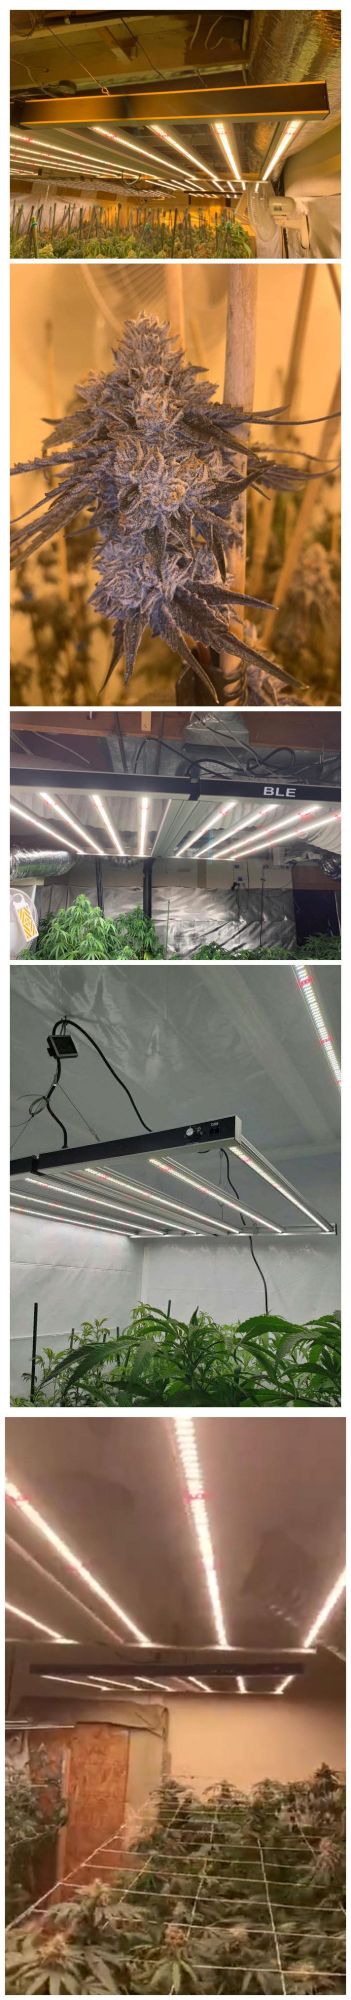 880W 1000W LED Grow Light 8 Light Bars Full Spectrum for Medical Plant